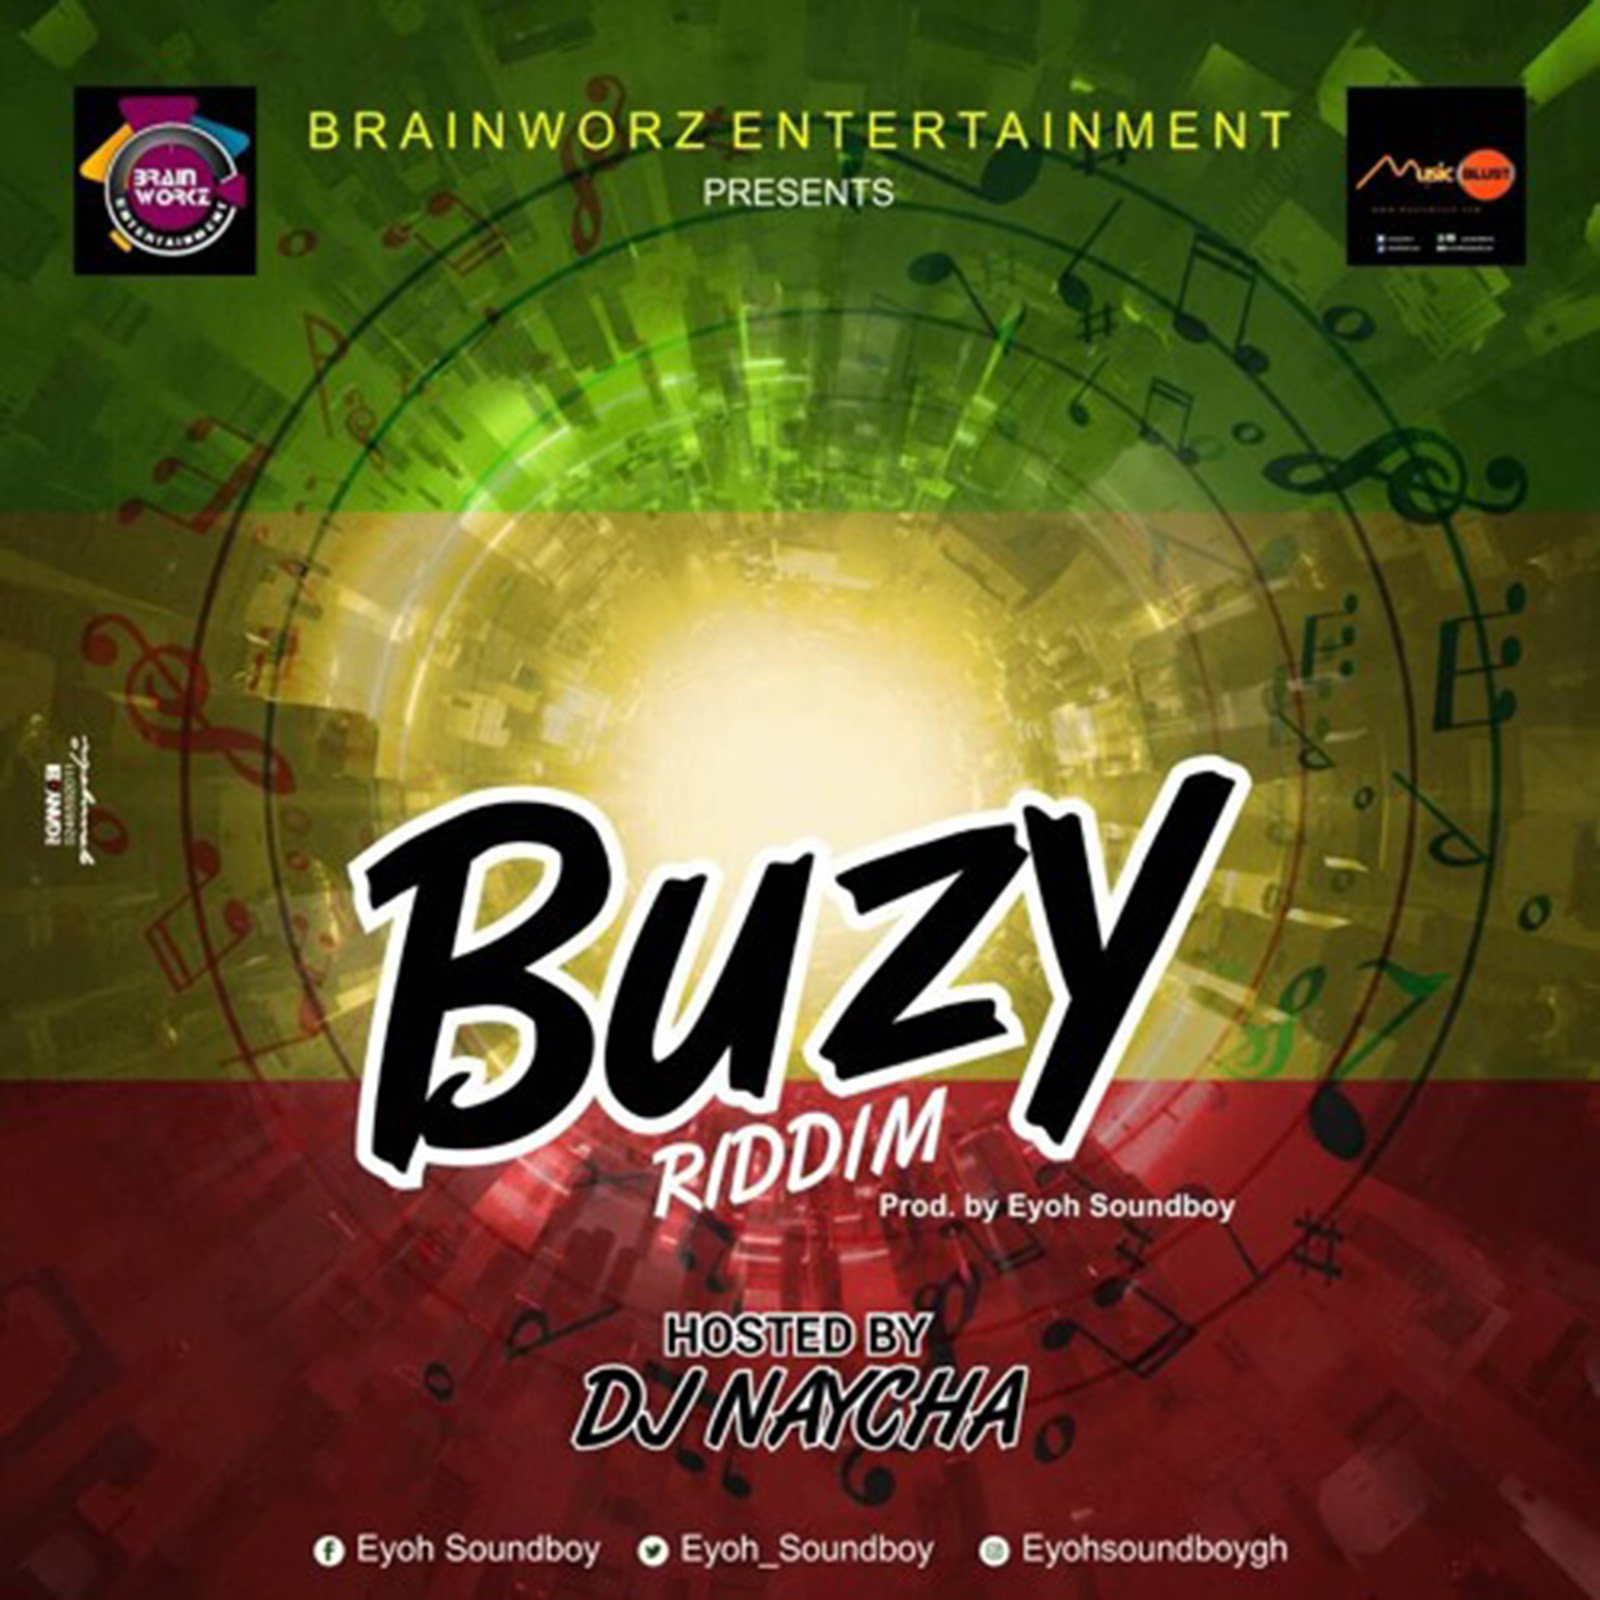 Buzy Riddim by Eyoh Soundboy